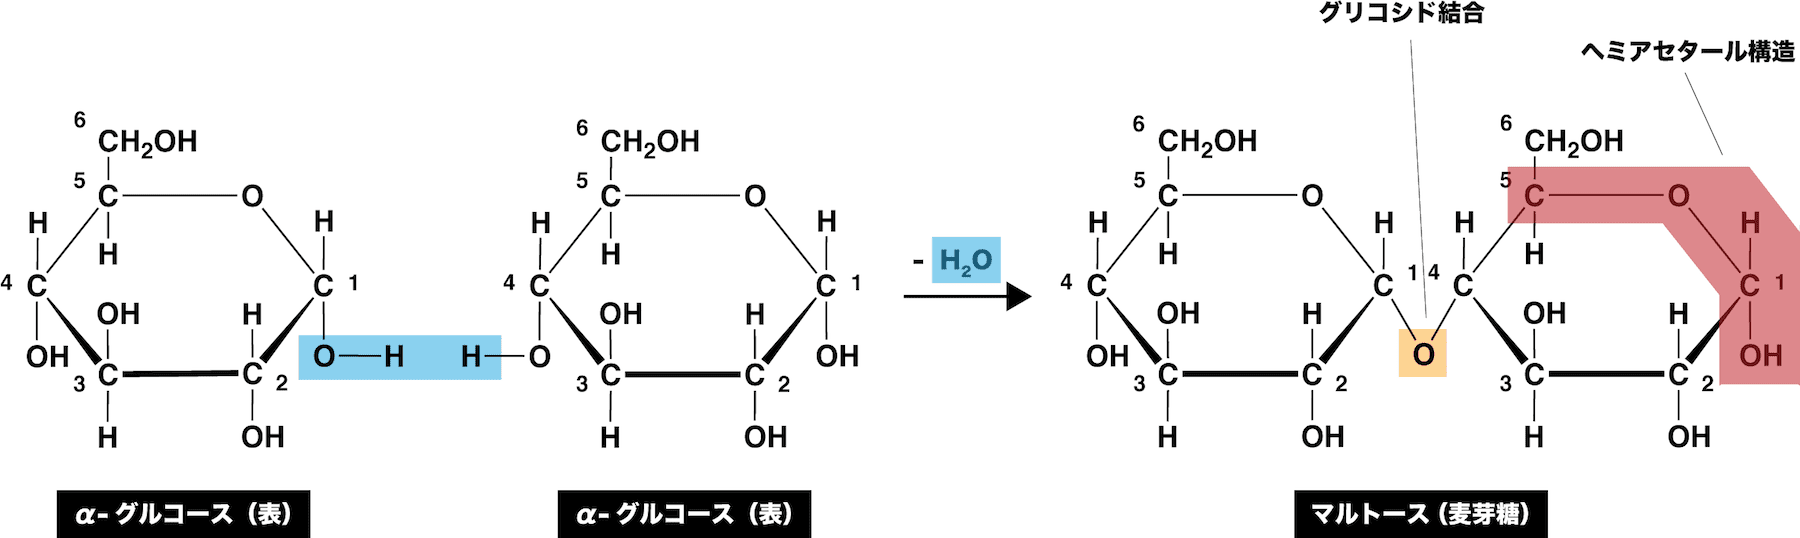 二糖類 マルトース スクロースなどの還元性 構造式 結合 覚え方まとめ 化学のグルメ